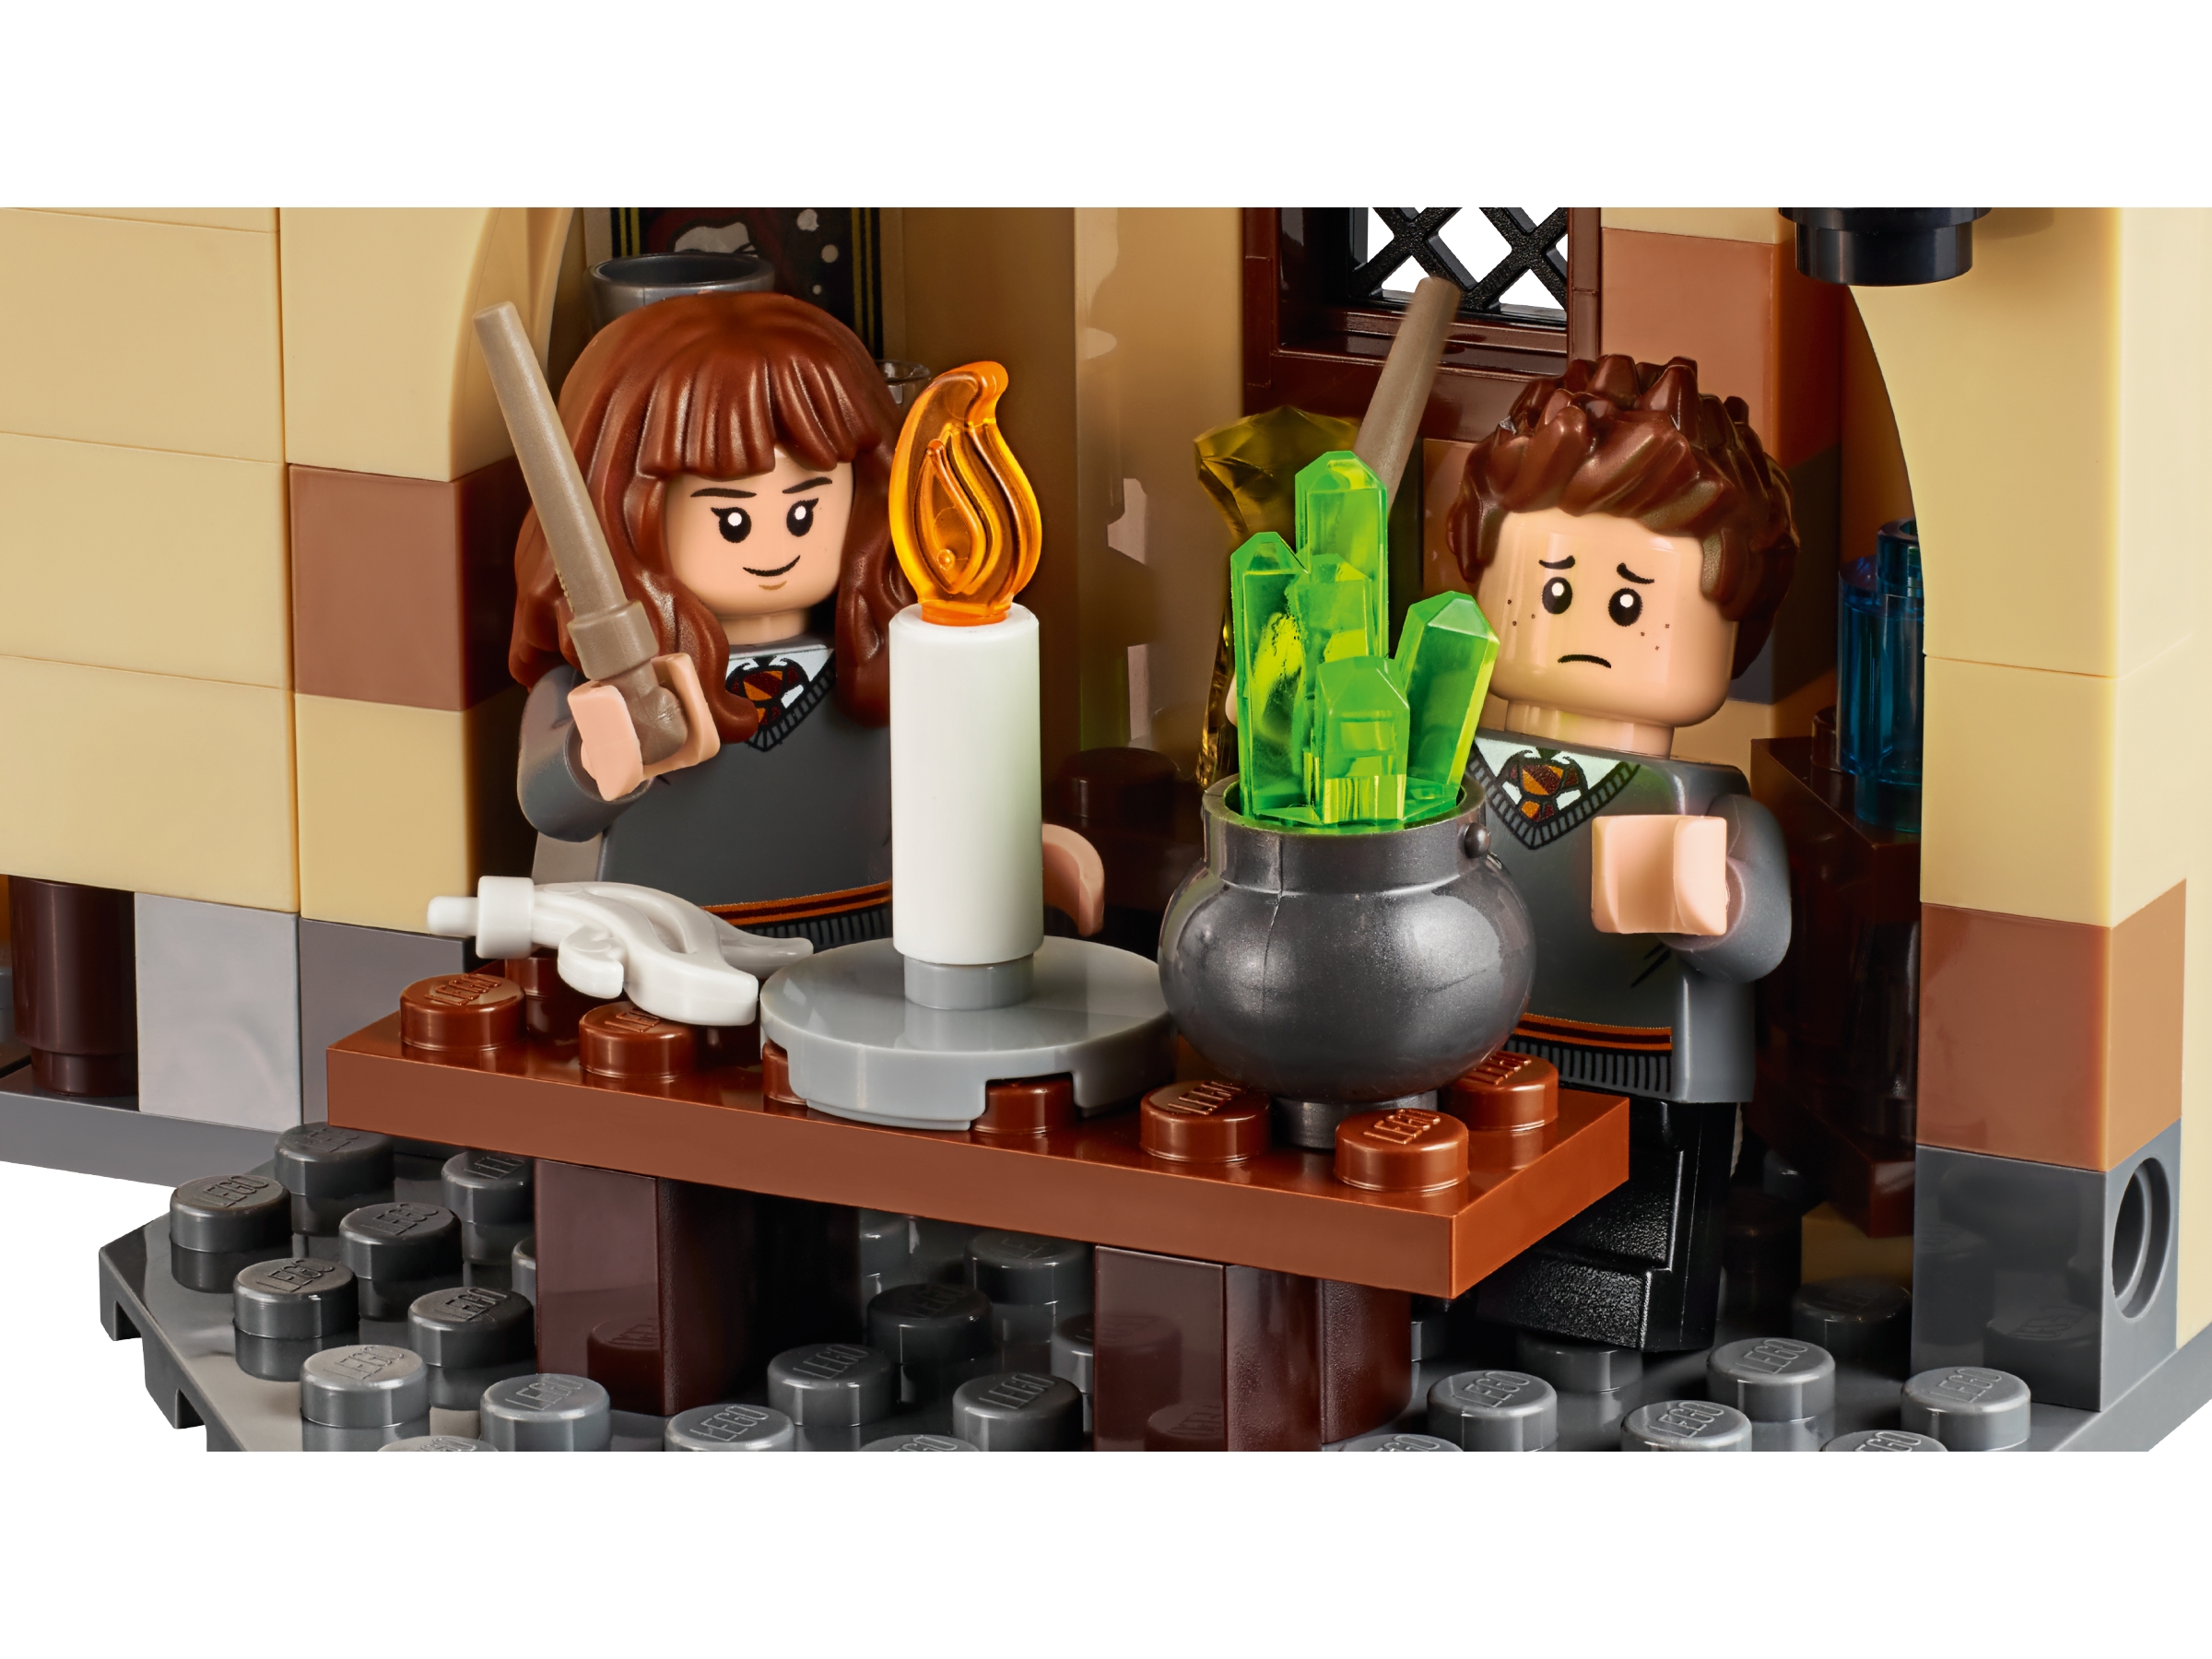 Dodge Hvile nok Hogwarts™ Whomping Willow™ 75953 | Harry Potter™ | Buy online at the  Official LEGO® Shop US